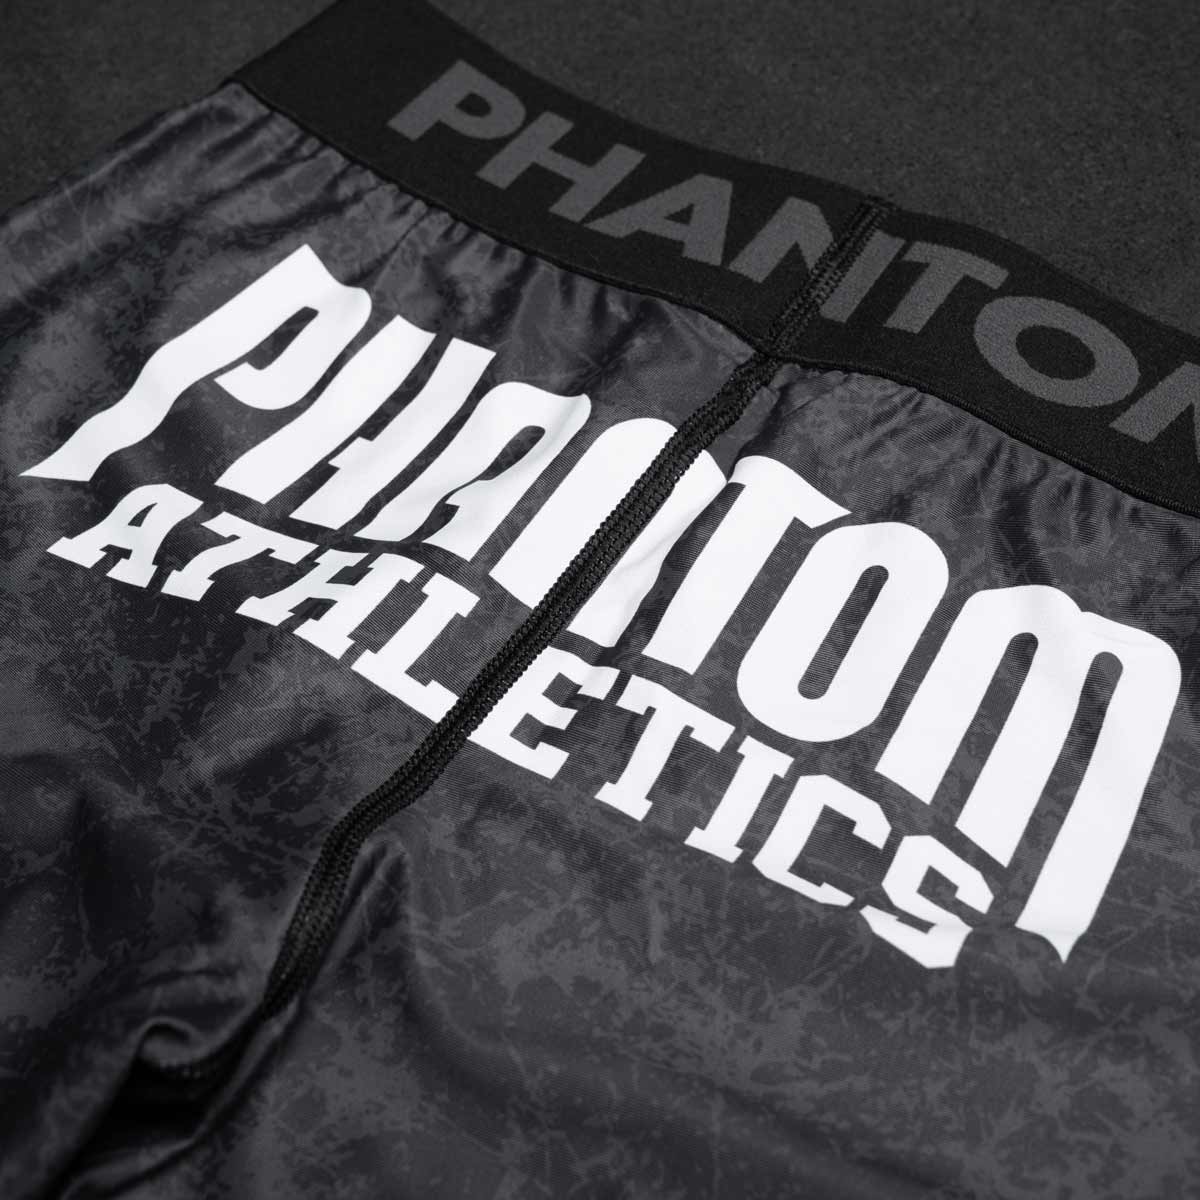 Die Phantom Vector Serious MMA Compression Fight Shorts im Smiley Design für deinen Kampfsport. Mit hochwertigem Sublimationsdruck.